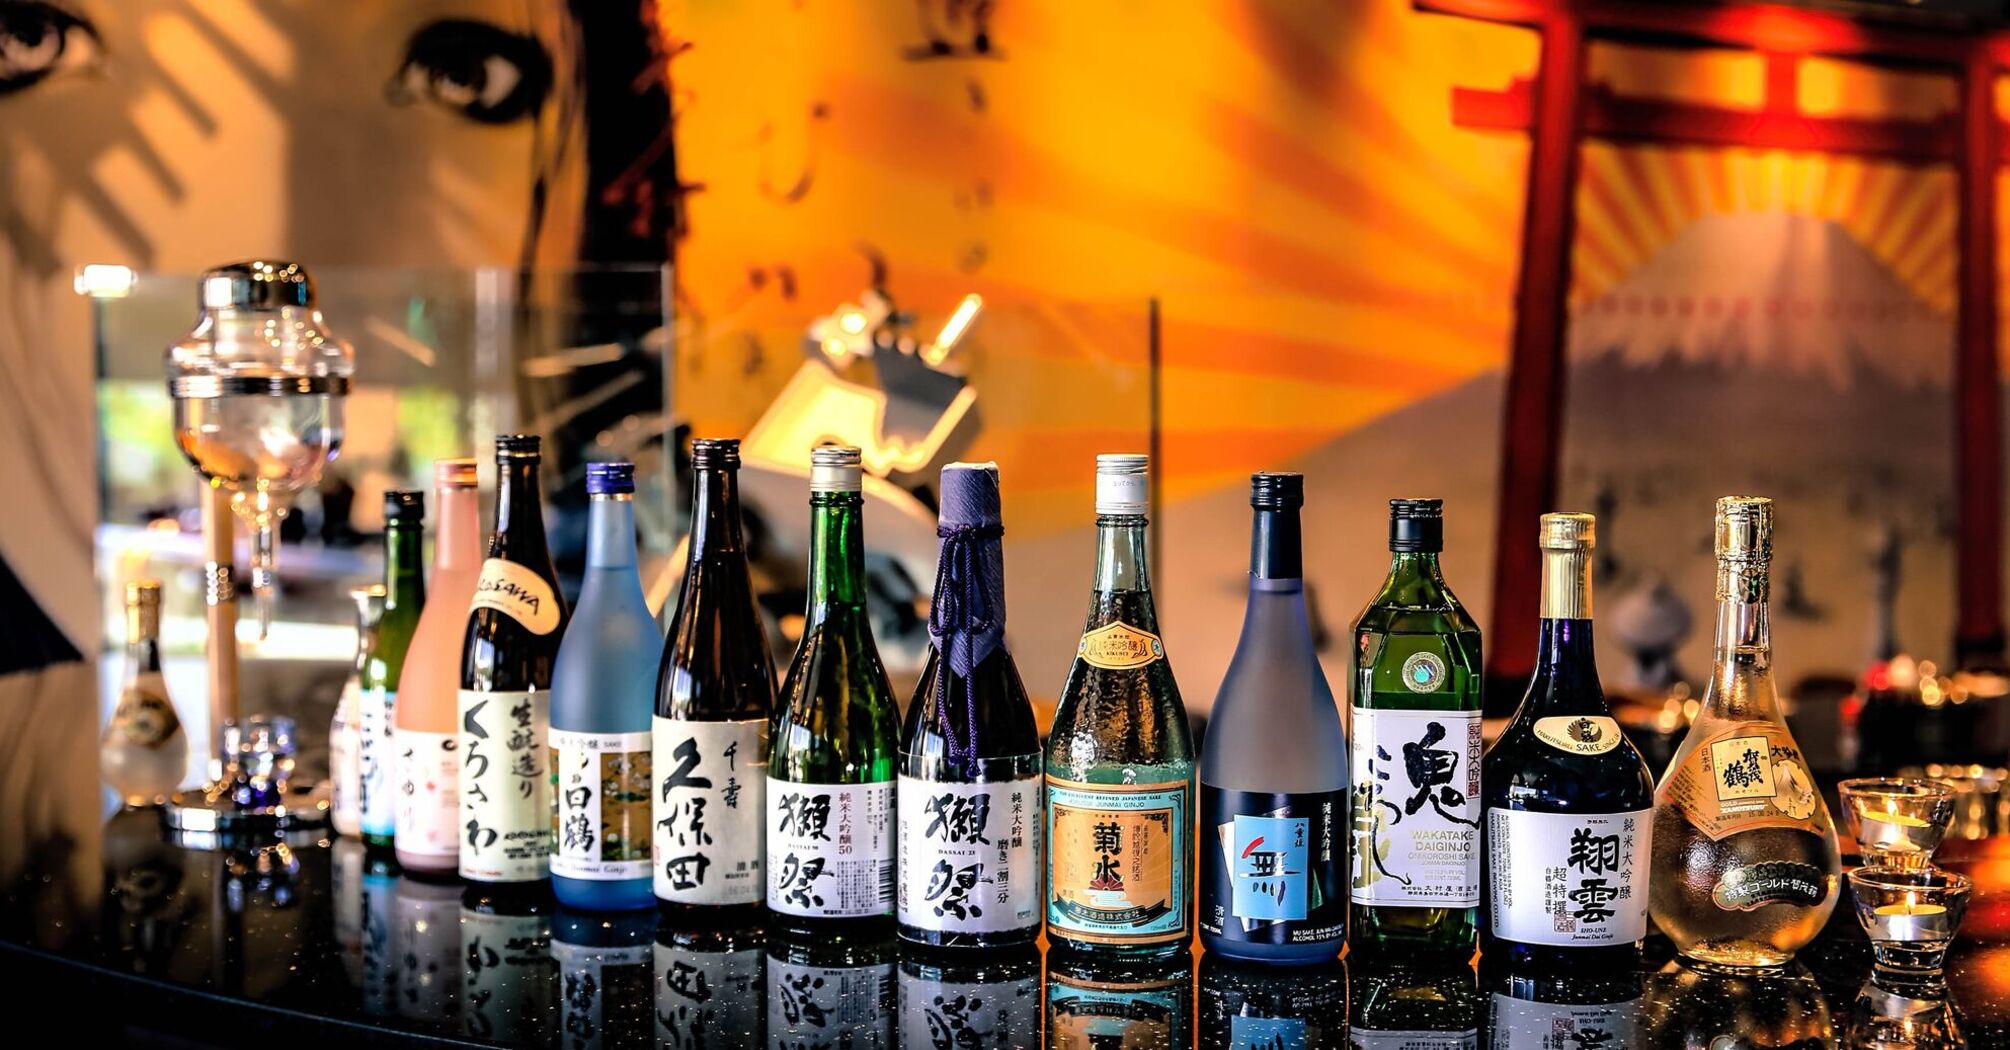 Several bottles of sake drink